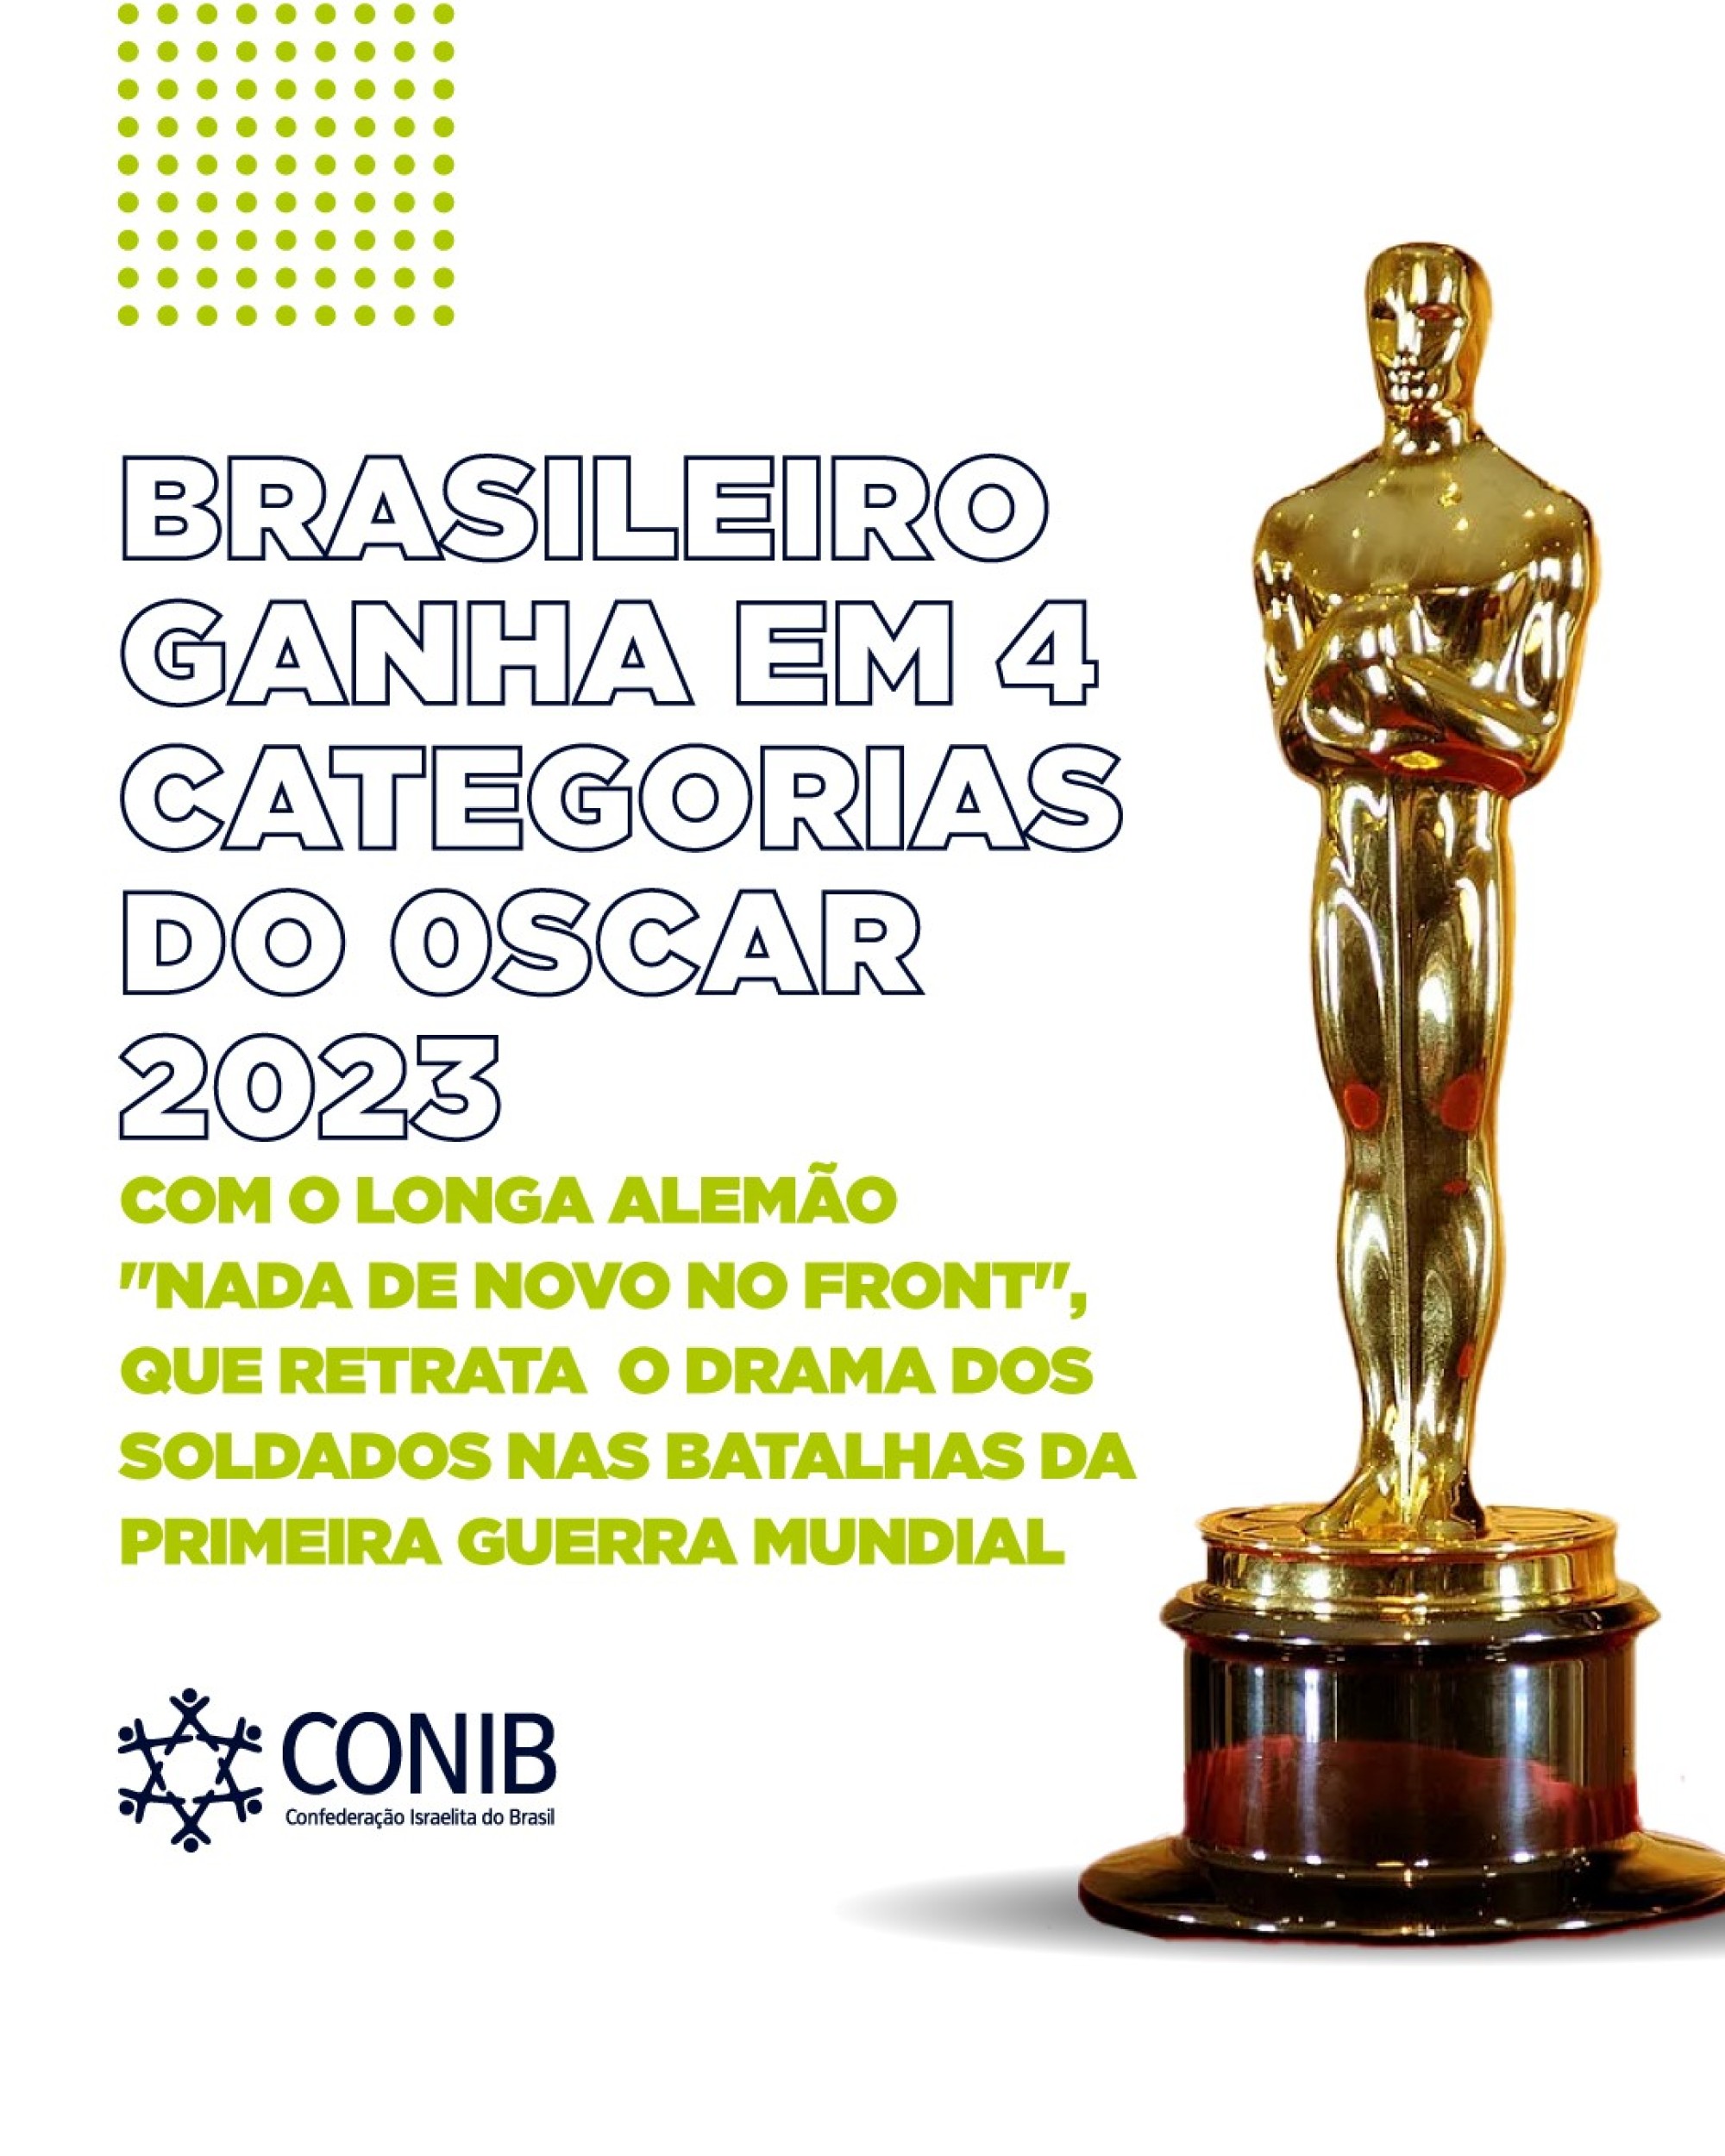 “Nada de novo no front”, do produtor brasileiro Daniel Dreifuss, ganha o Oscar 2023 em quatro categorias - Fundada em 1948, a CONIB – Confederação Israelita do Brasil é o órgão de representação e coordenação política da comunidade judaica brasileira. 